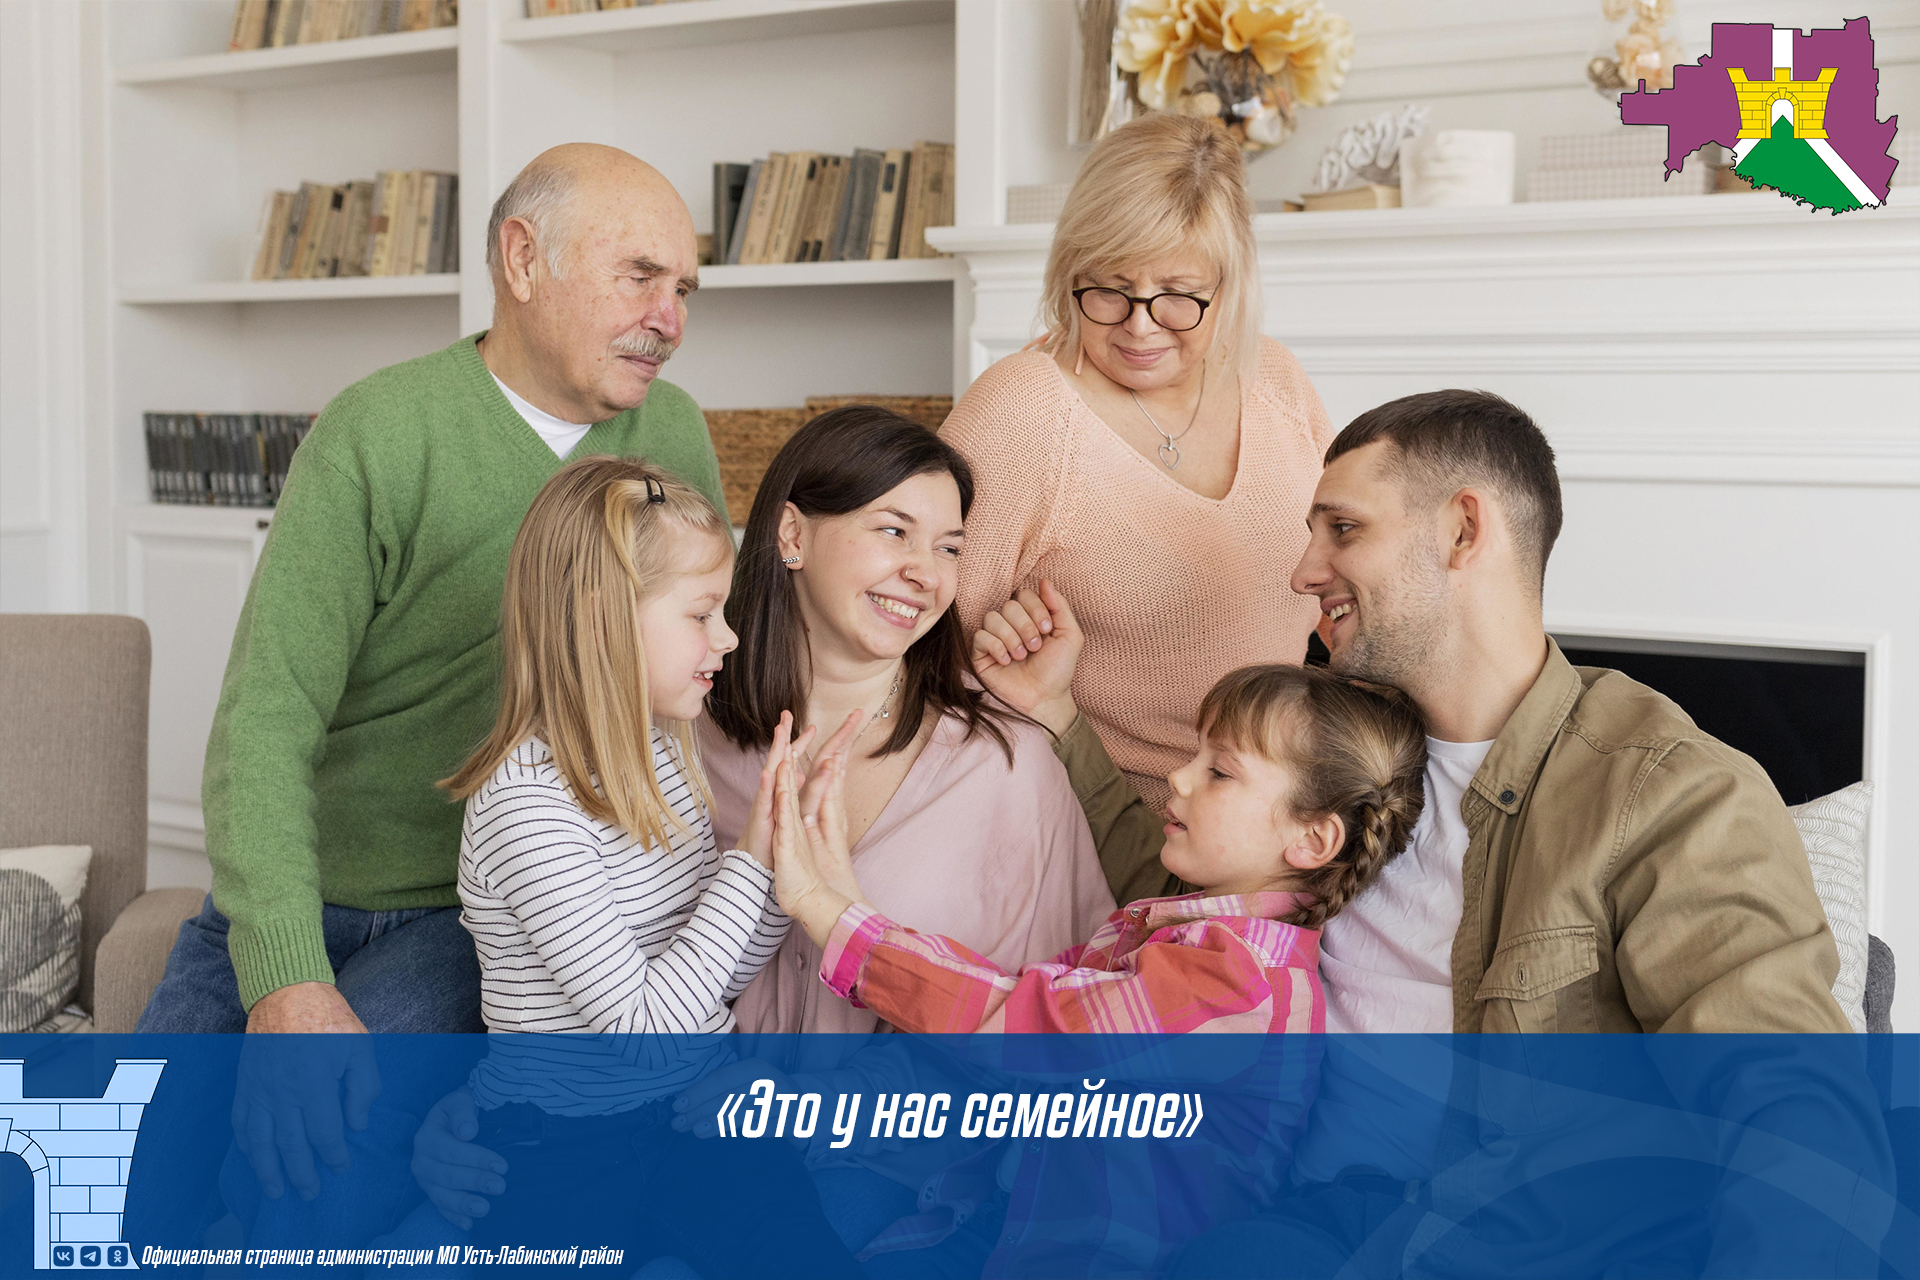 Всероссийский семейный конкурс "Это у нас семейное"